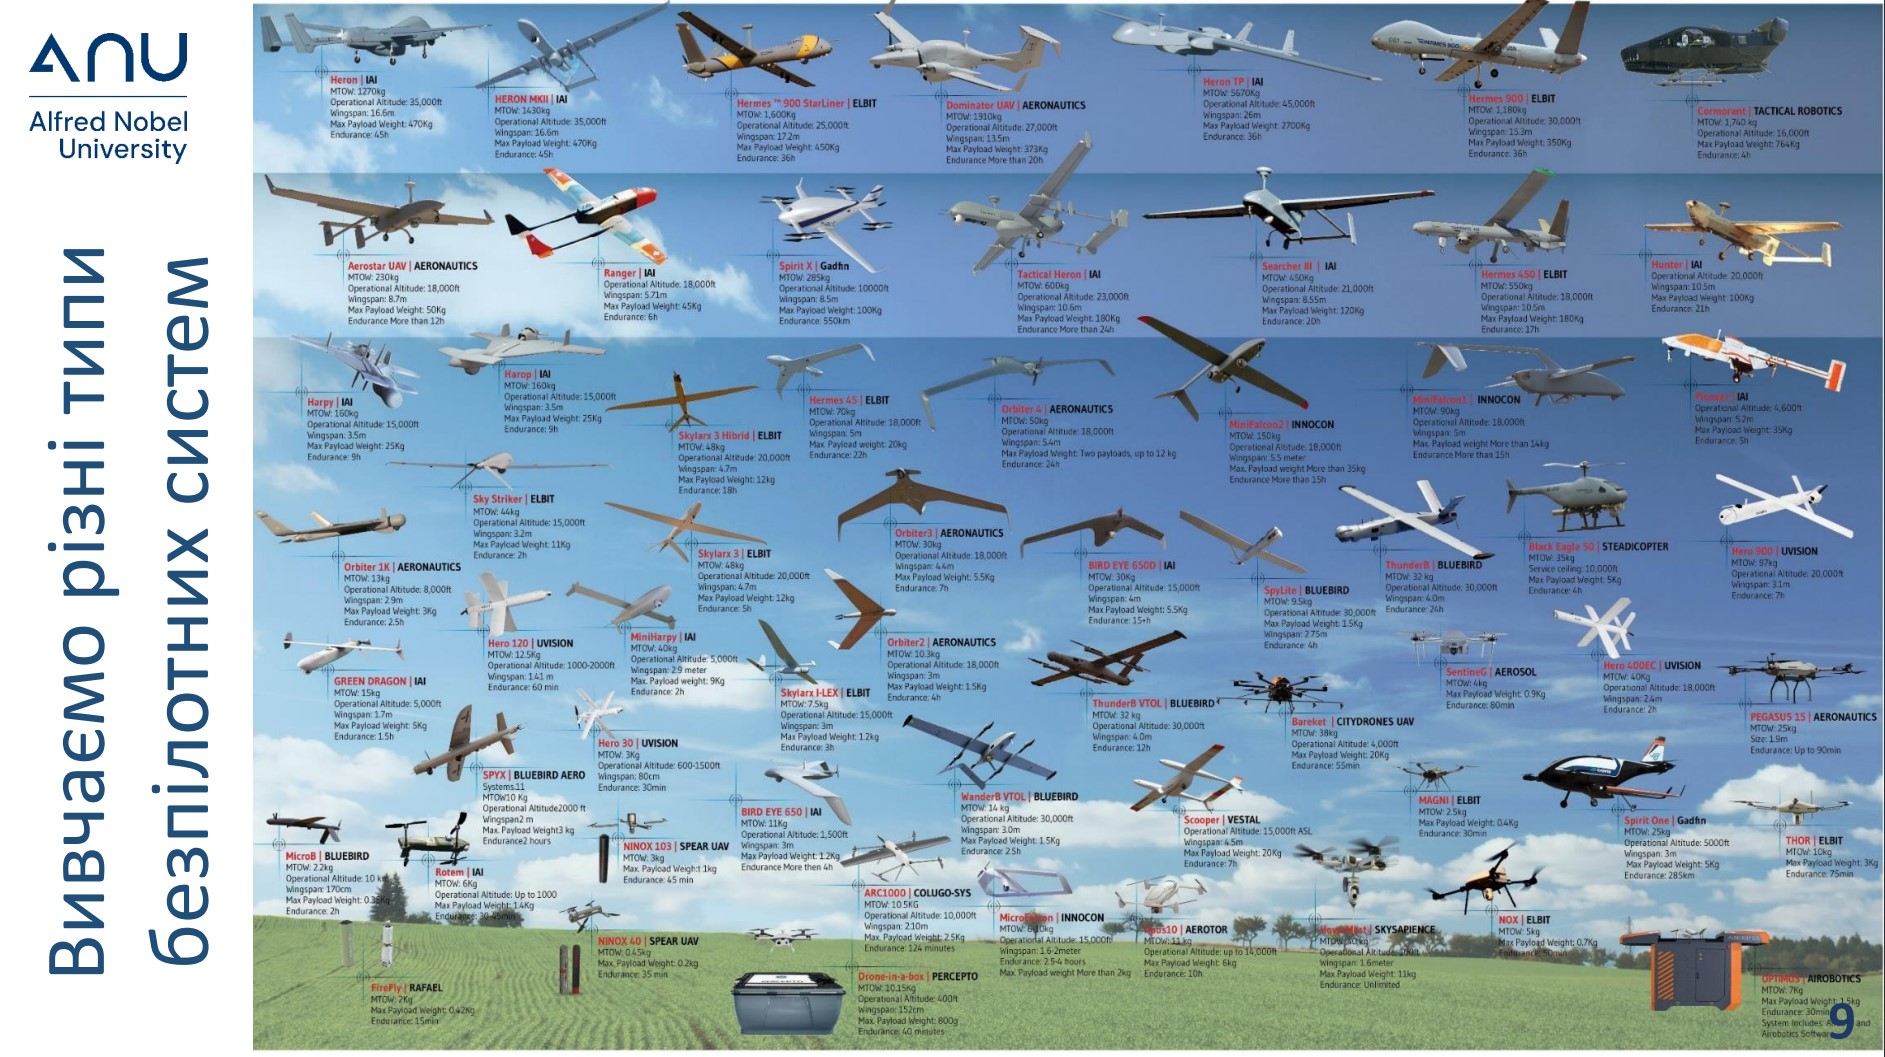 Навчальна діаграма від Університету Альфреда Нобеля, що демонструє різноманітні безпілотні літальні апарати (БПЛА) або дрони, позначені назвами та технічними характеристиками на тлі хмарного неба.